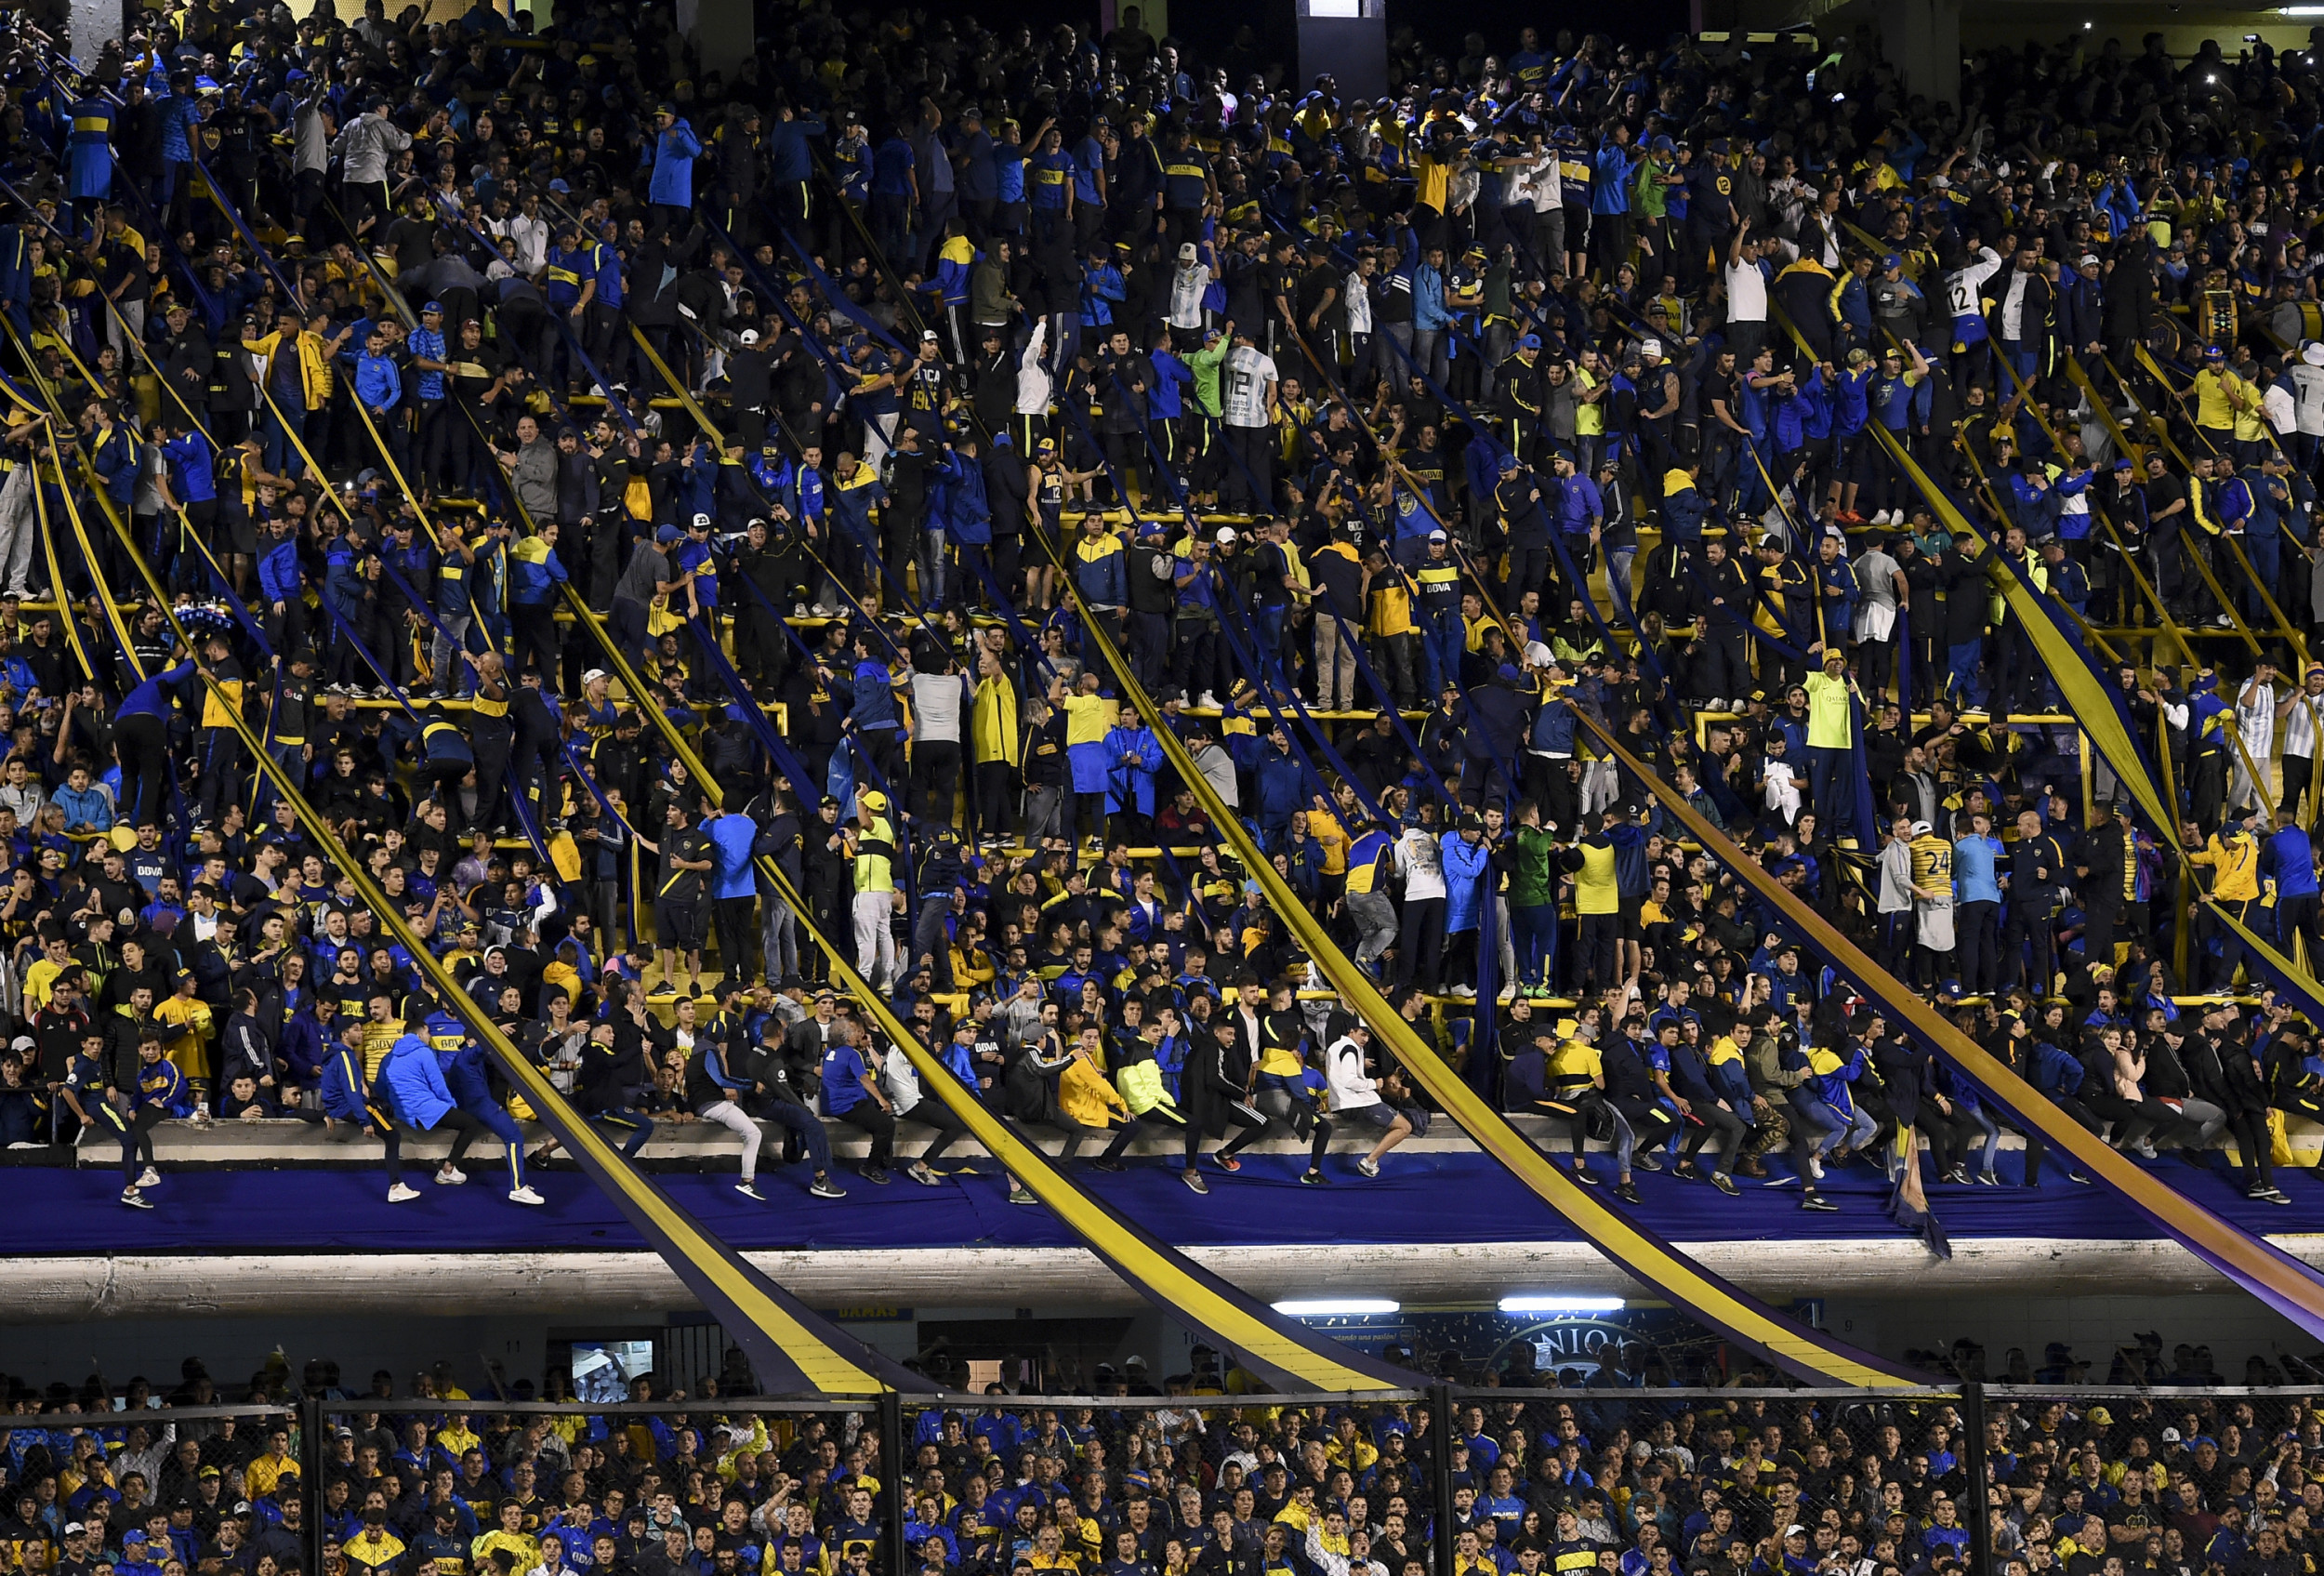 Palmeiras vs Boca Juniors: times, how to watch on TV, stream online